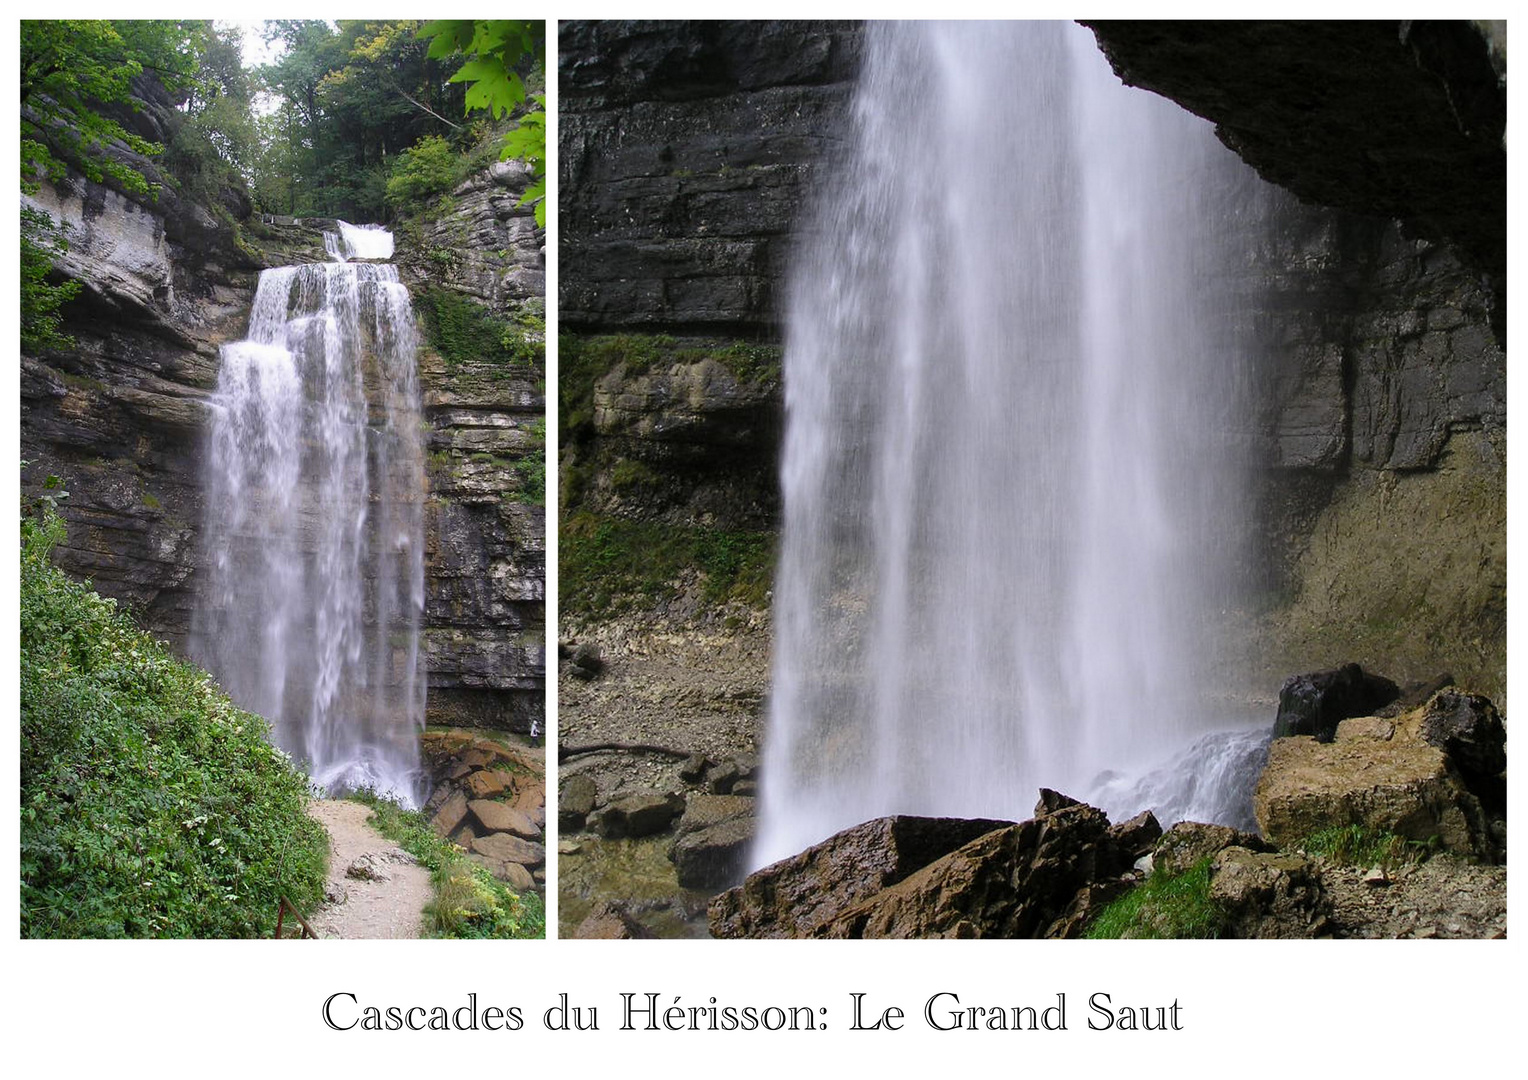 Cascades du Hérisson: Le Grand Saut